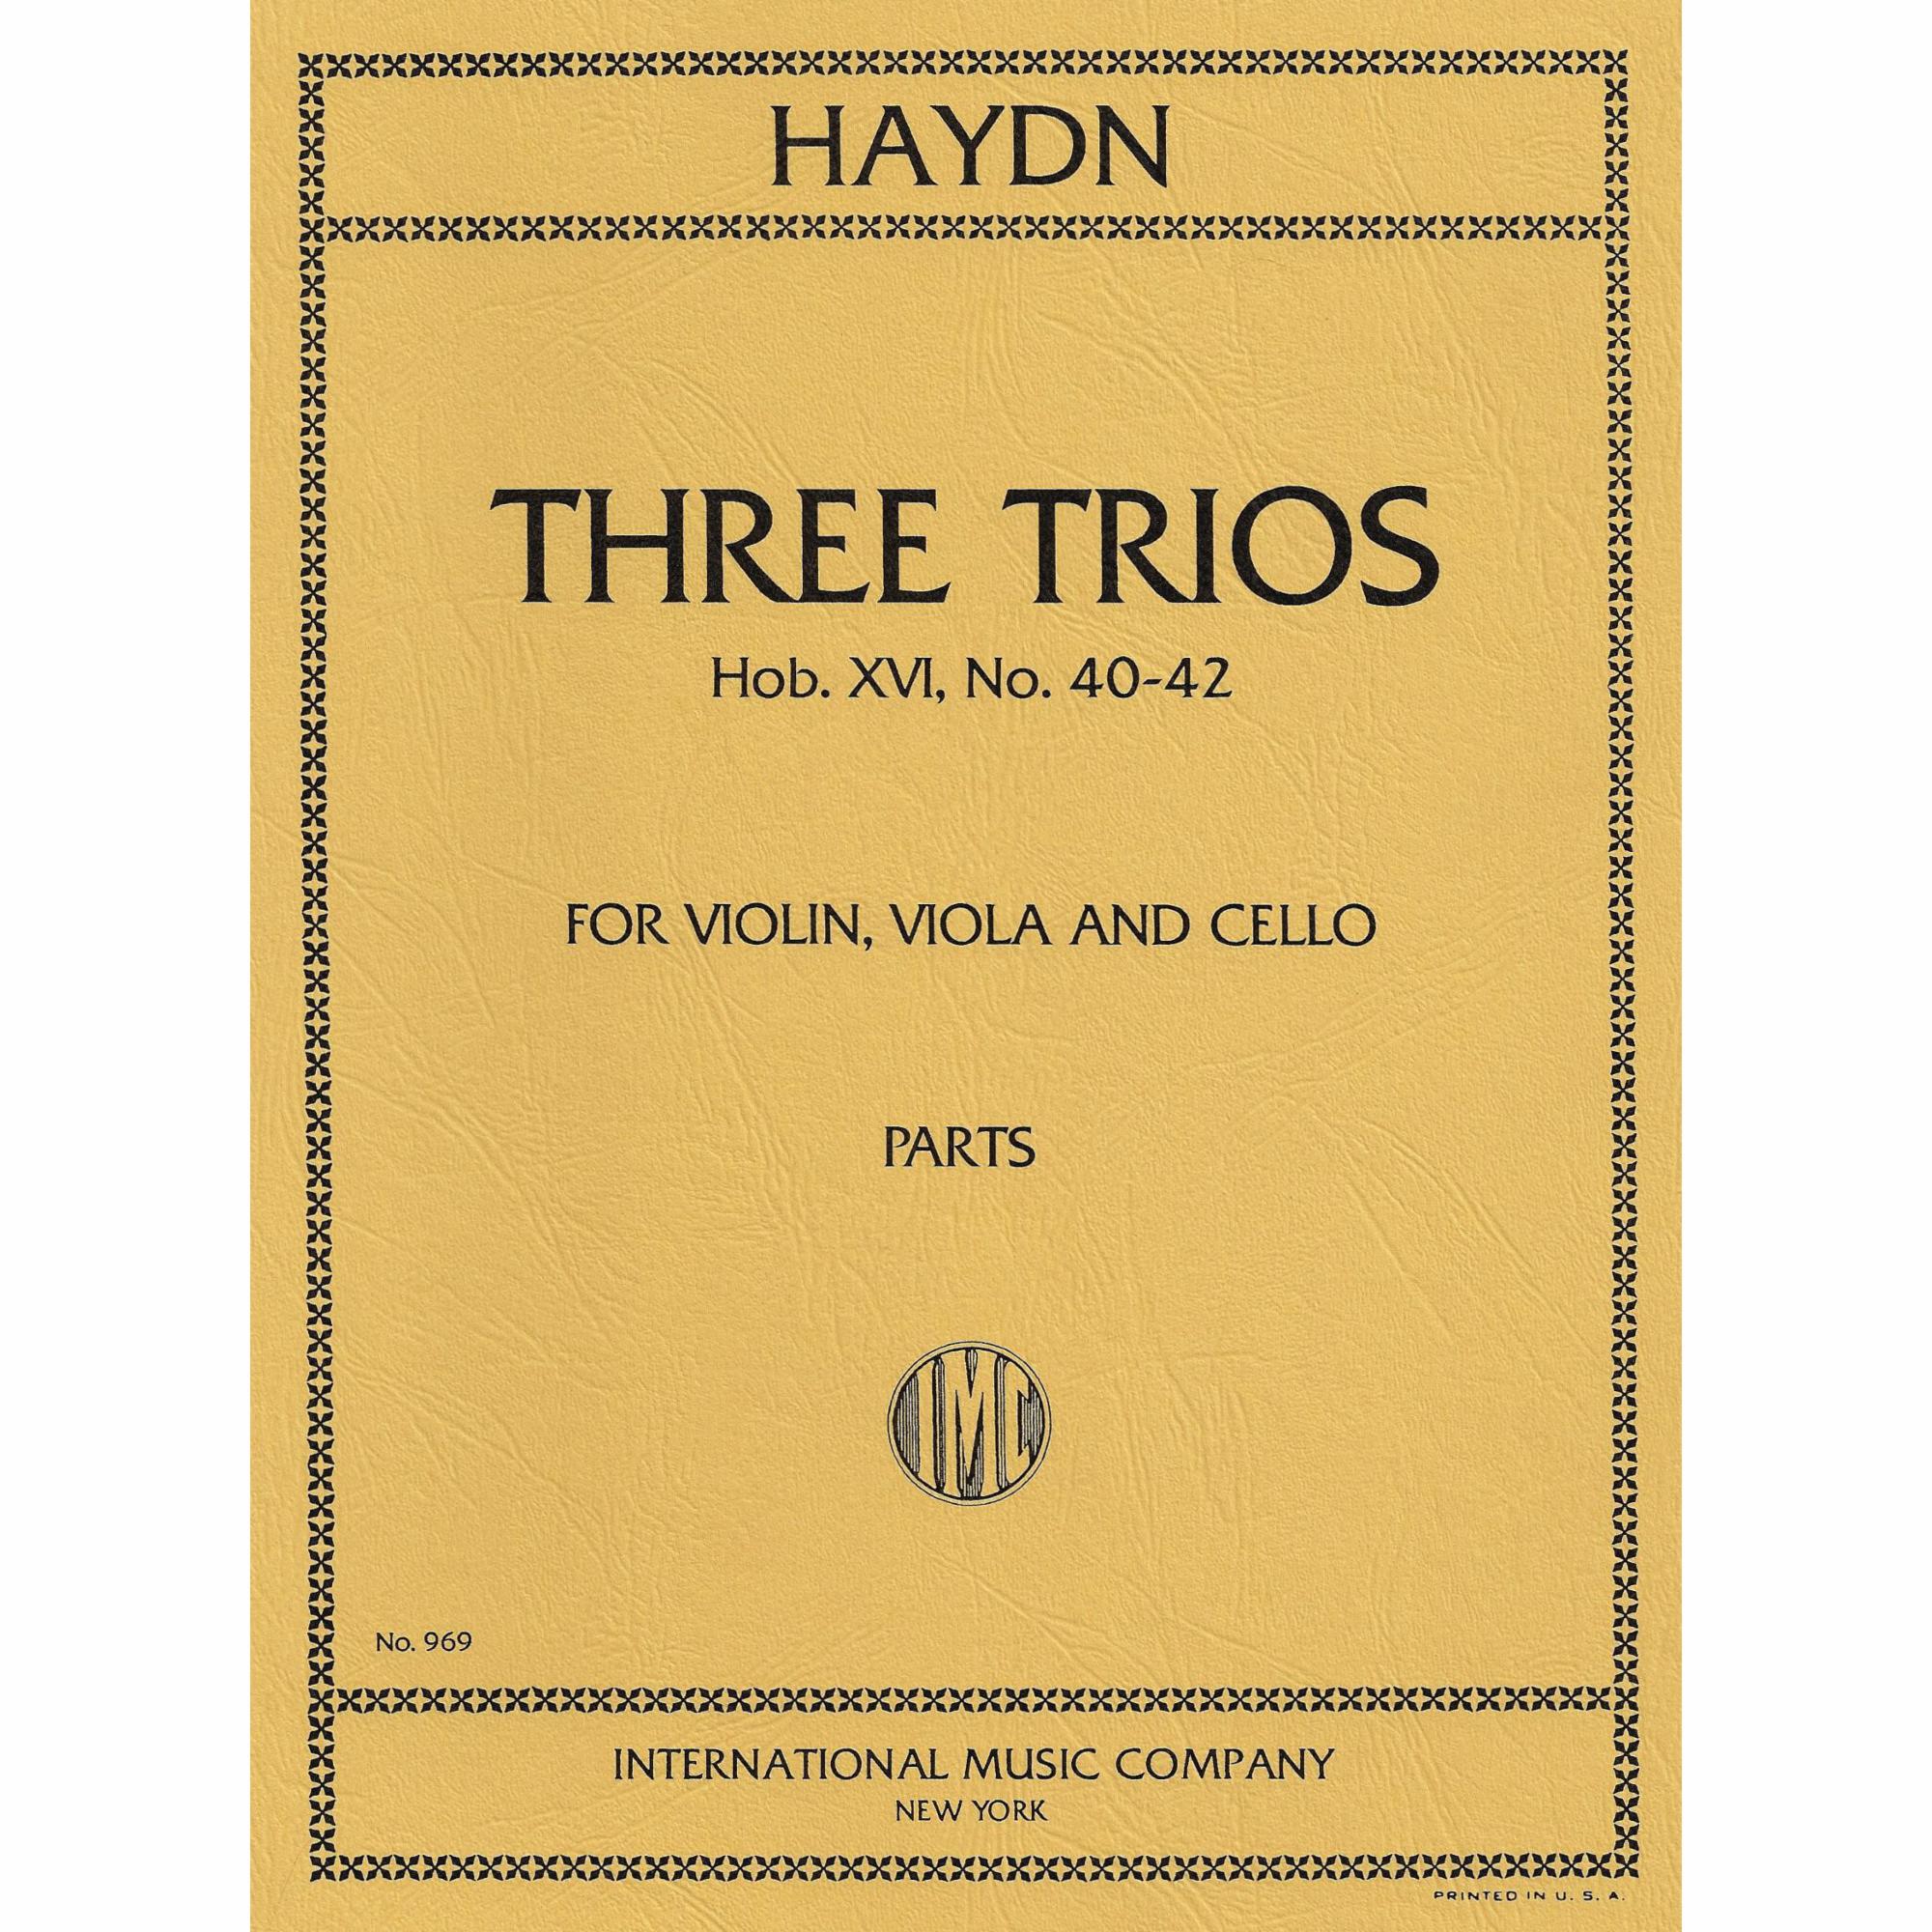 Haydn -- Three Trios, Hob. XVI, No. 40-42 for Violin, Viola, and Cello